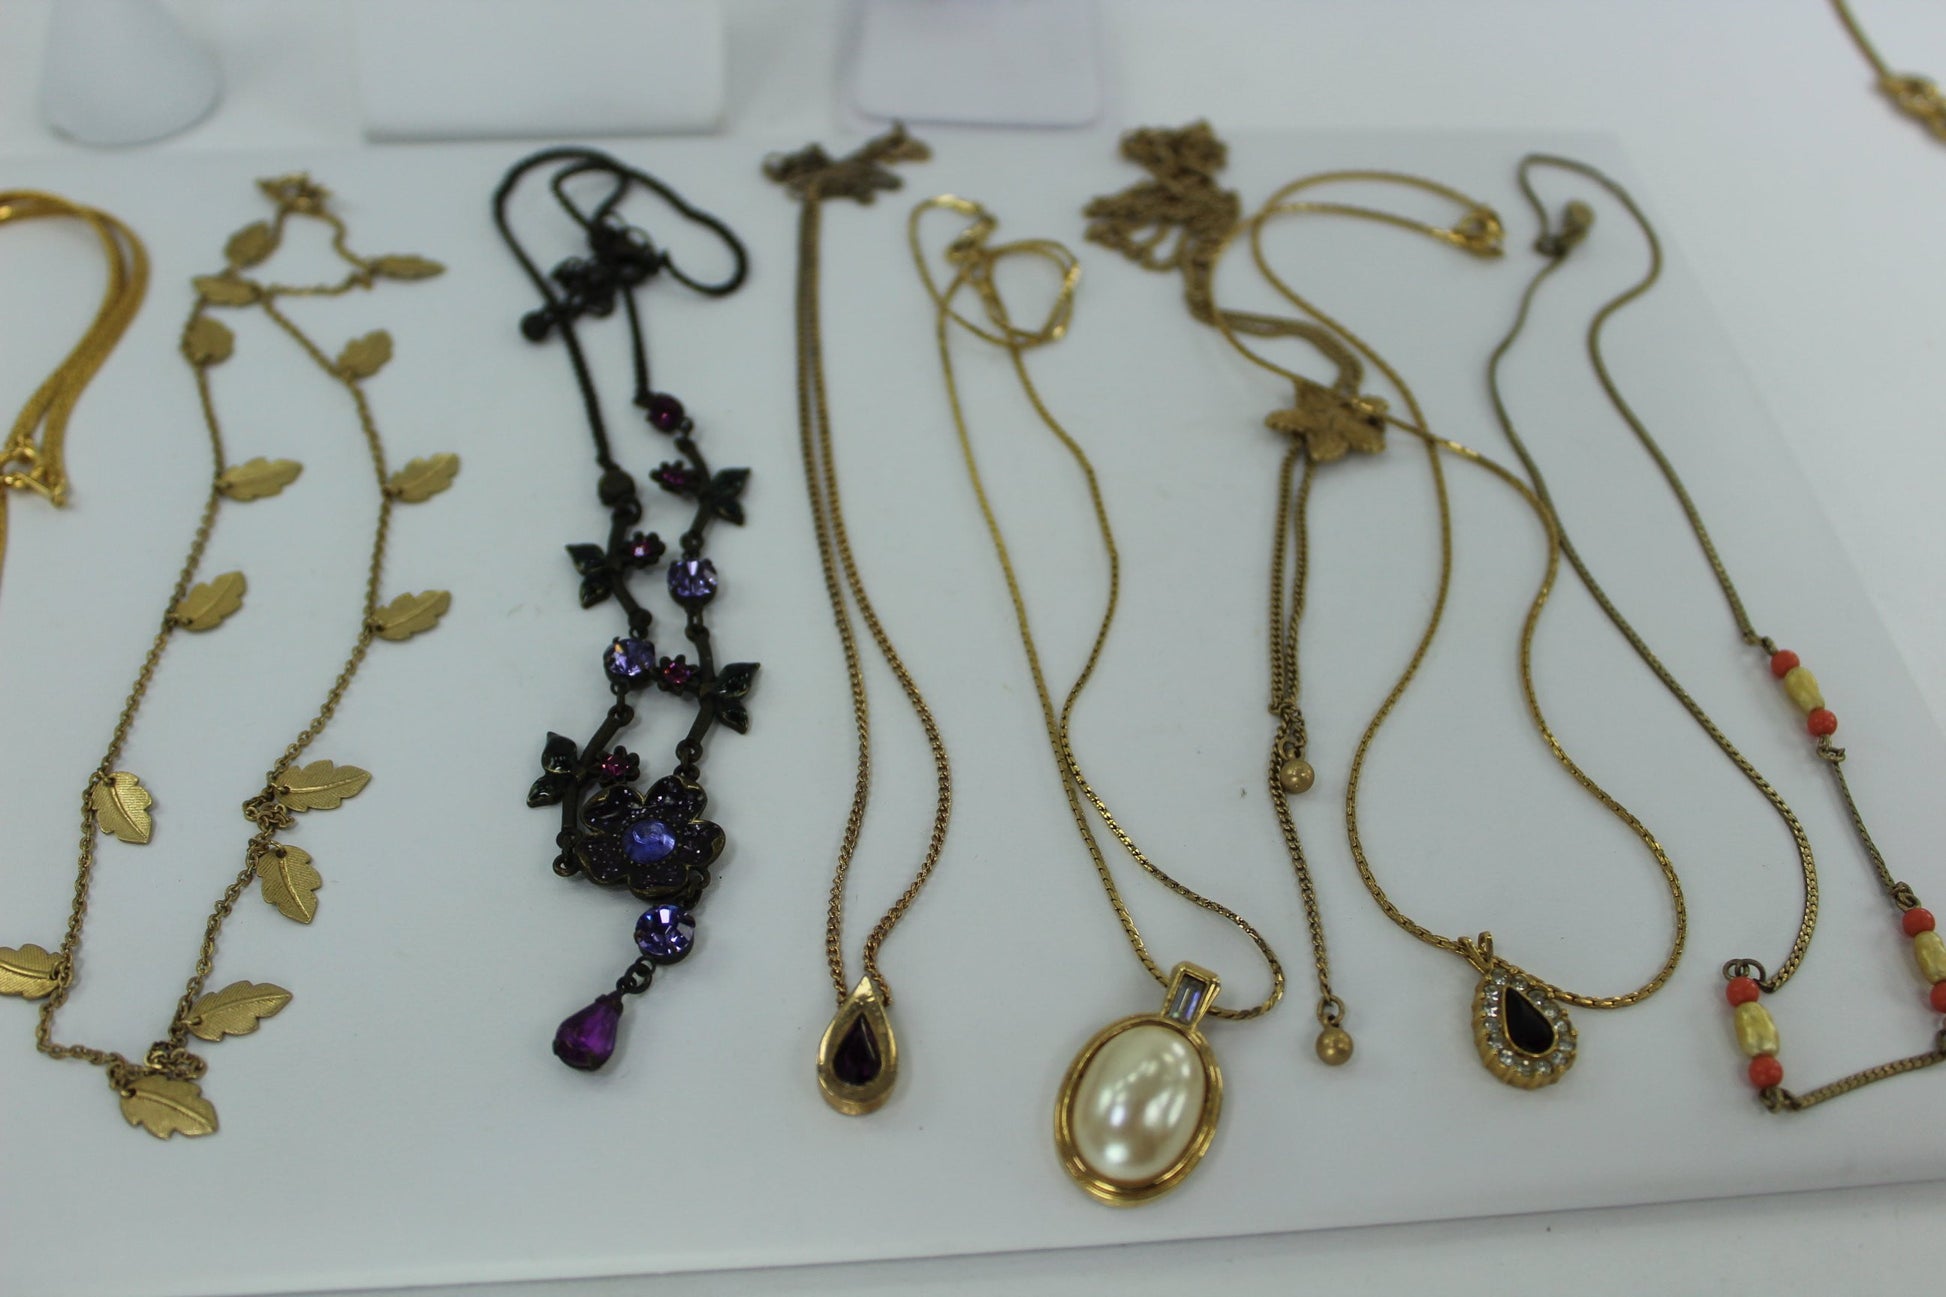 Vintage AVON Jewelry Lot 17 Pieces Wearables Resales Necklaces Bracelet Pins ER purple stone